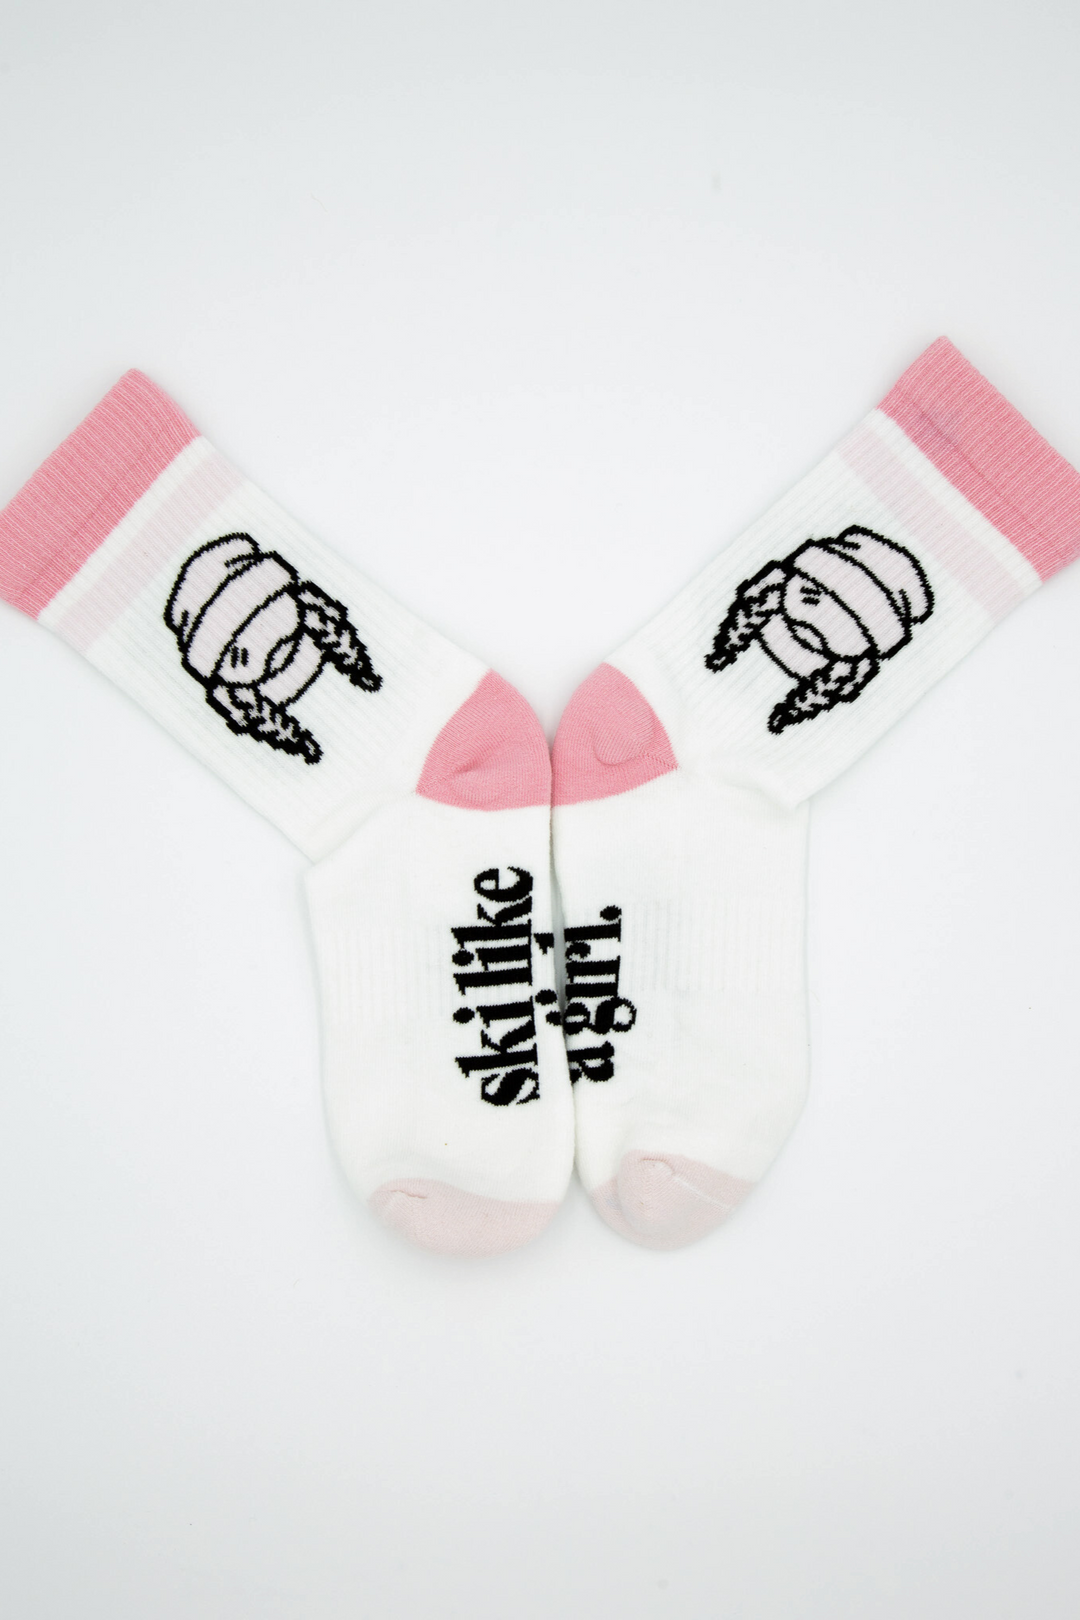 Ski Like a Girl Pink Stripe socks - Heyday